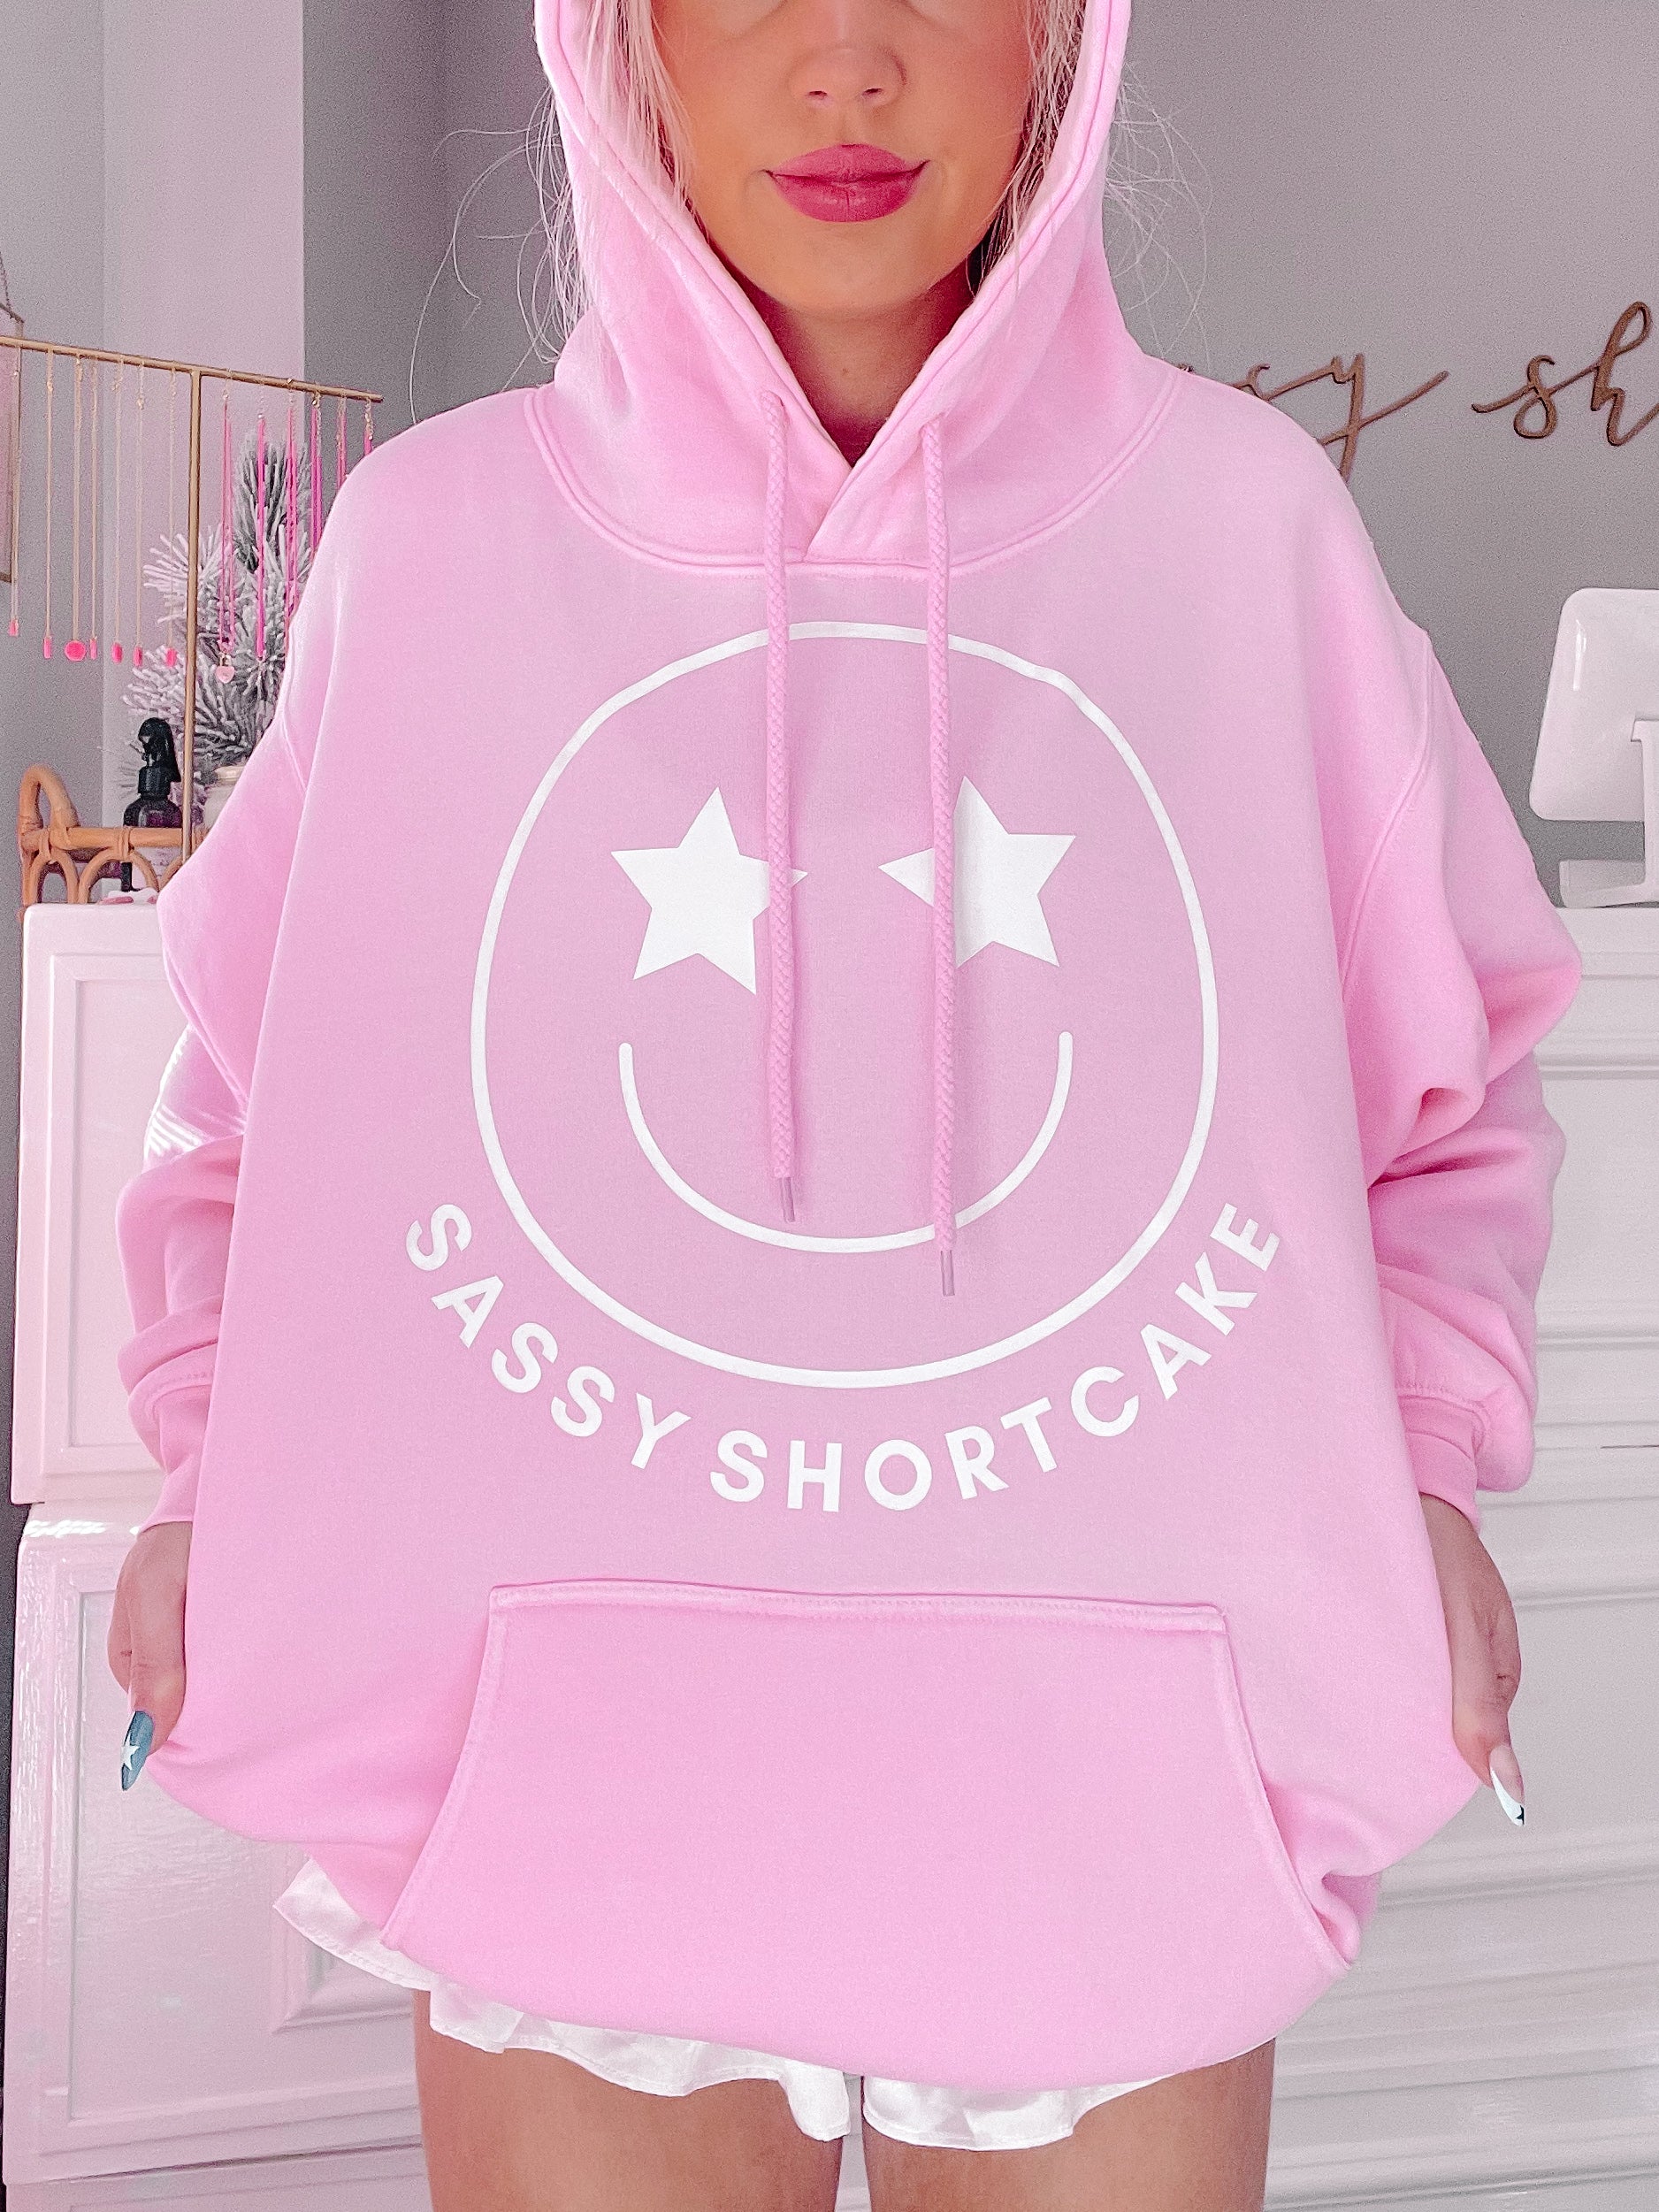 Sassy Shortcake Star Smiley Hoodie | Sassy Shortcake Boutique | sassyshortcake.com